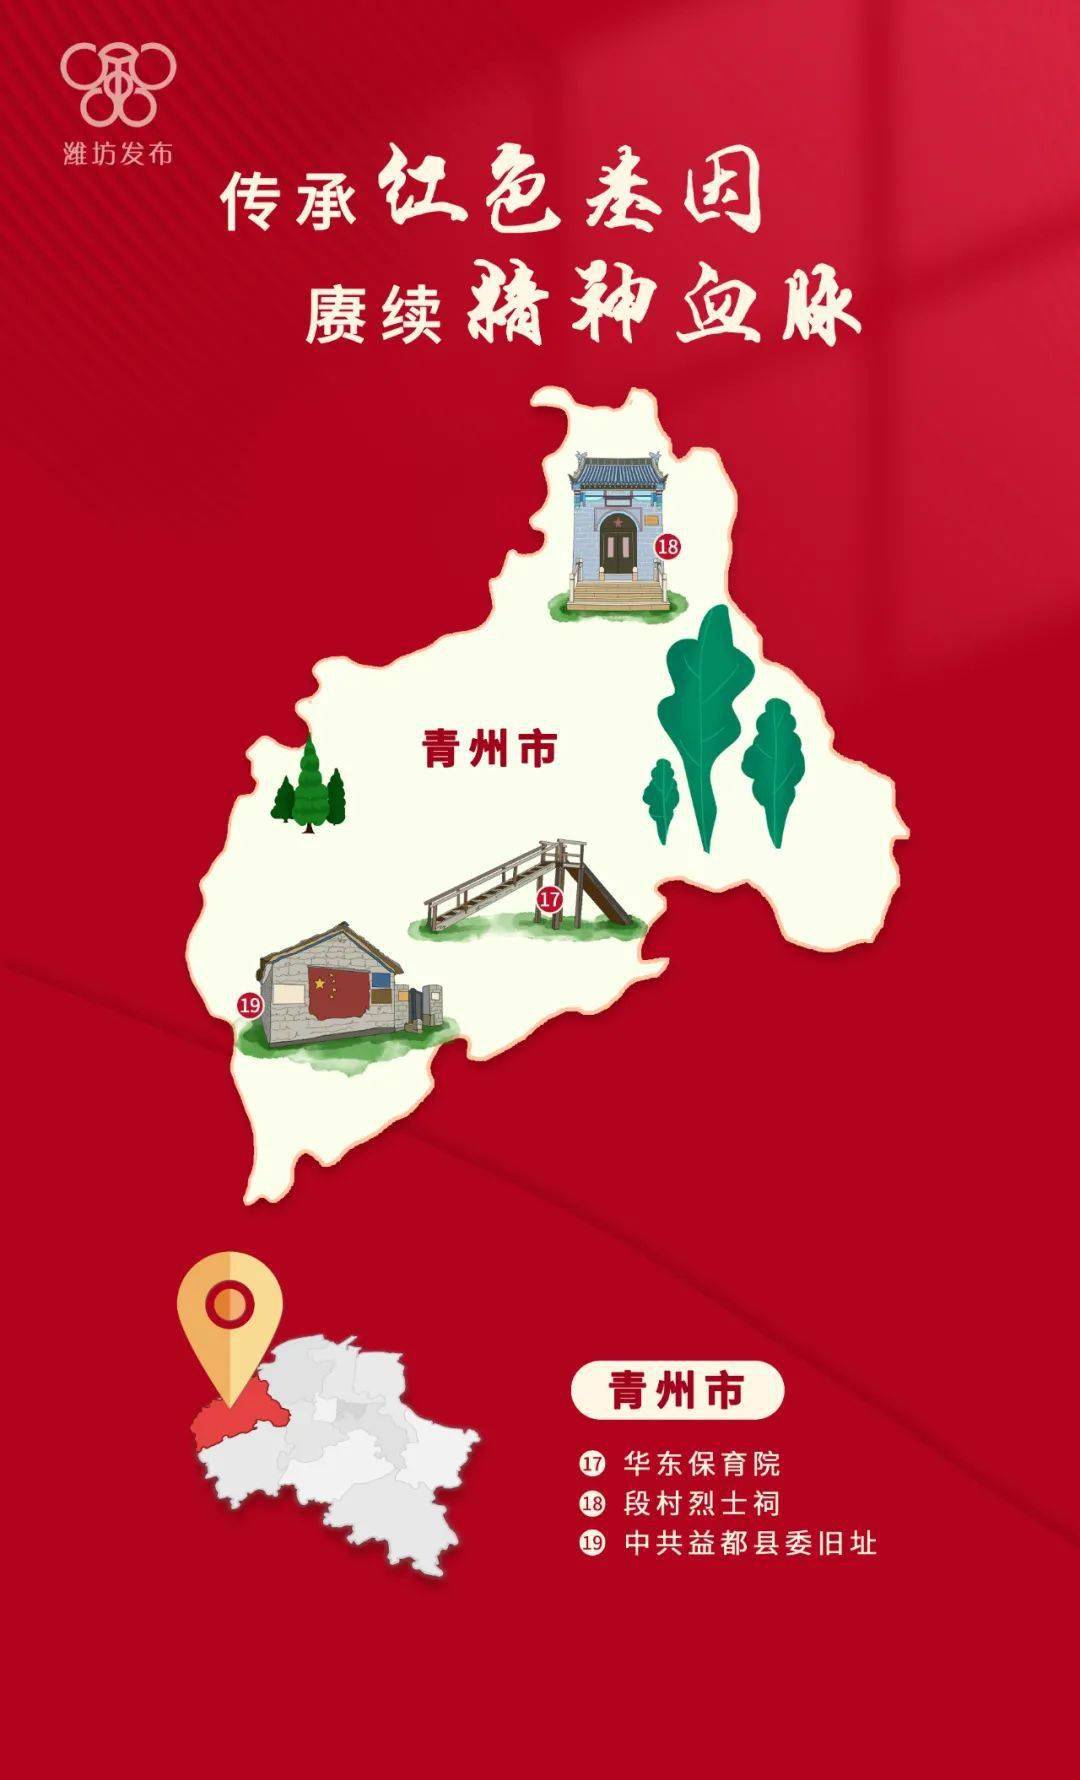 已公布为革命文物的有103处 这份潍坊"红色地图" 收录了每一个县市区